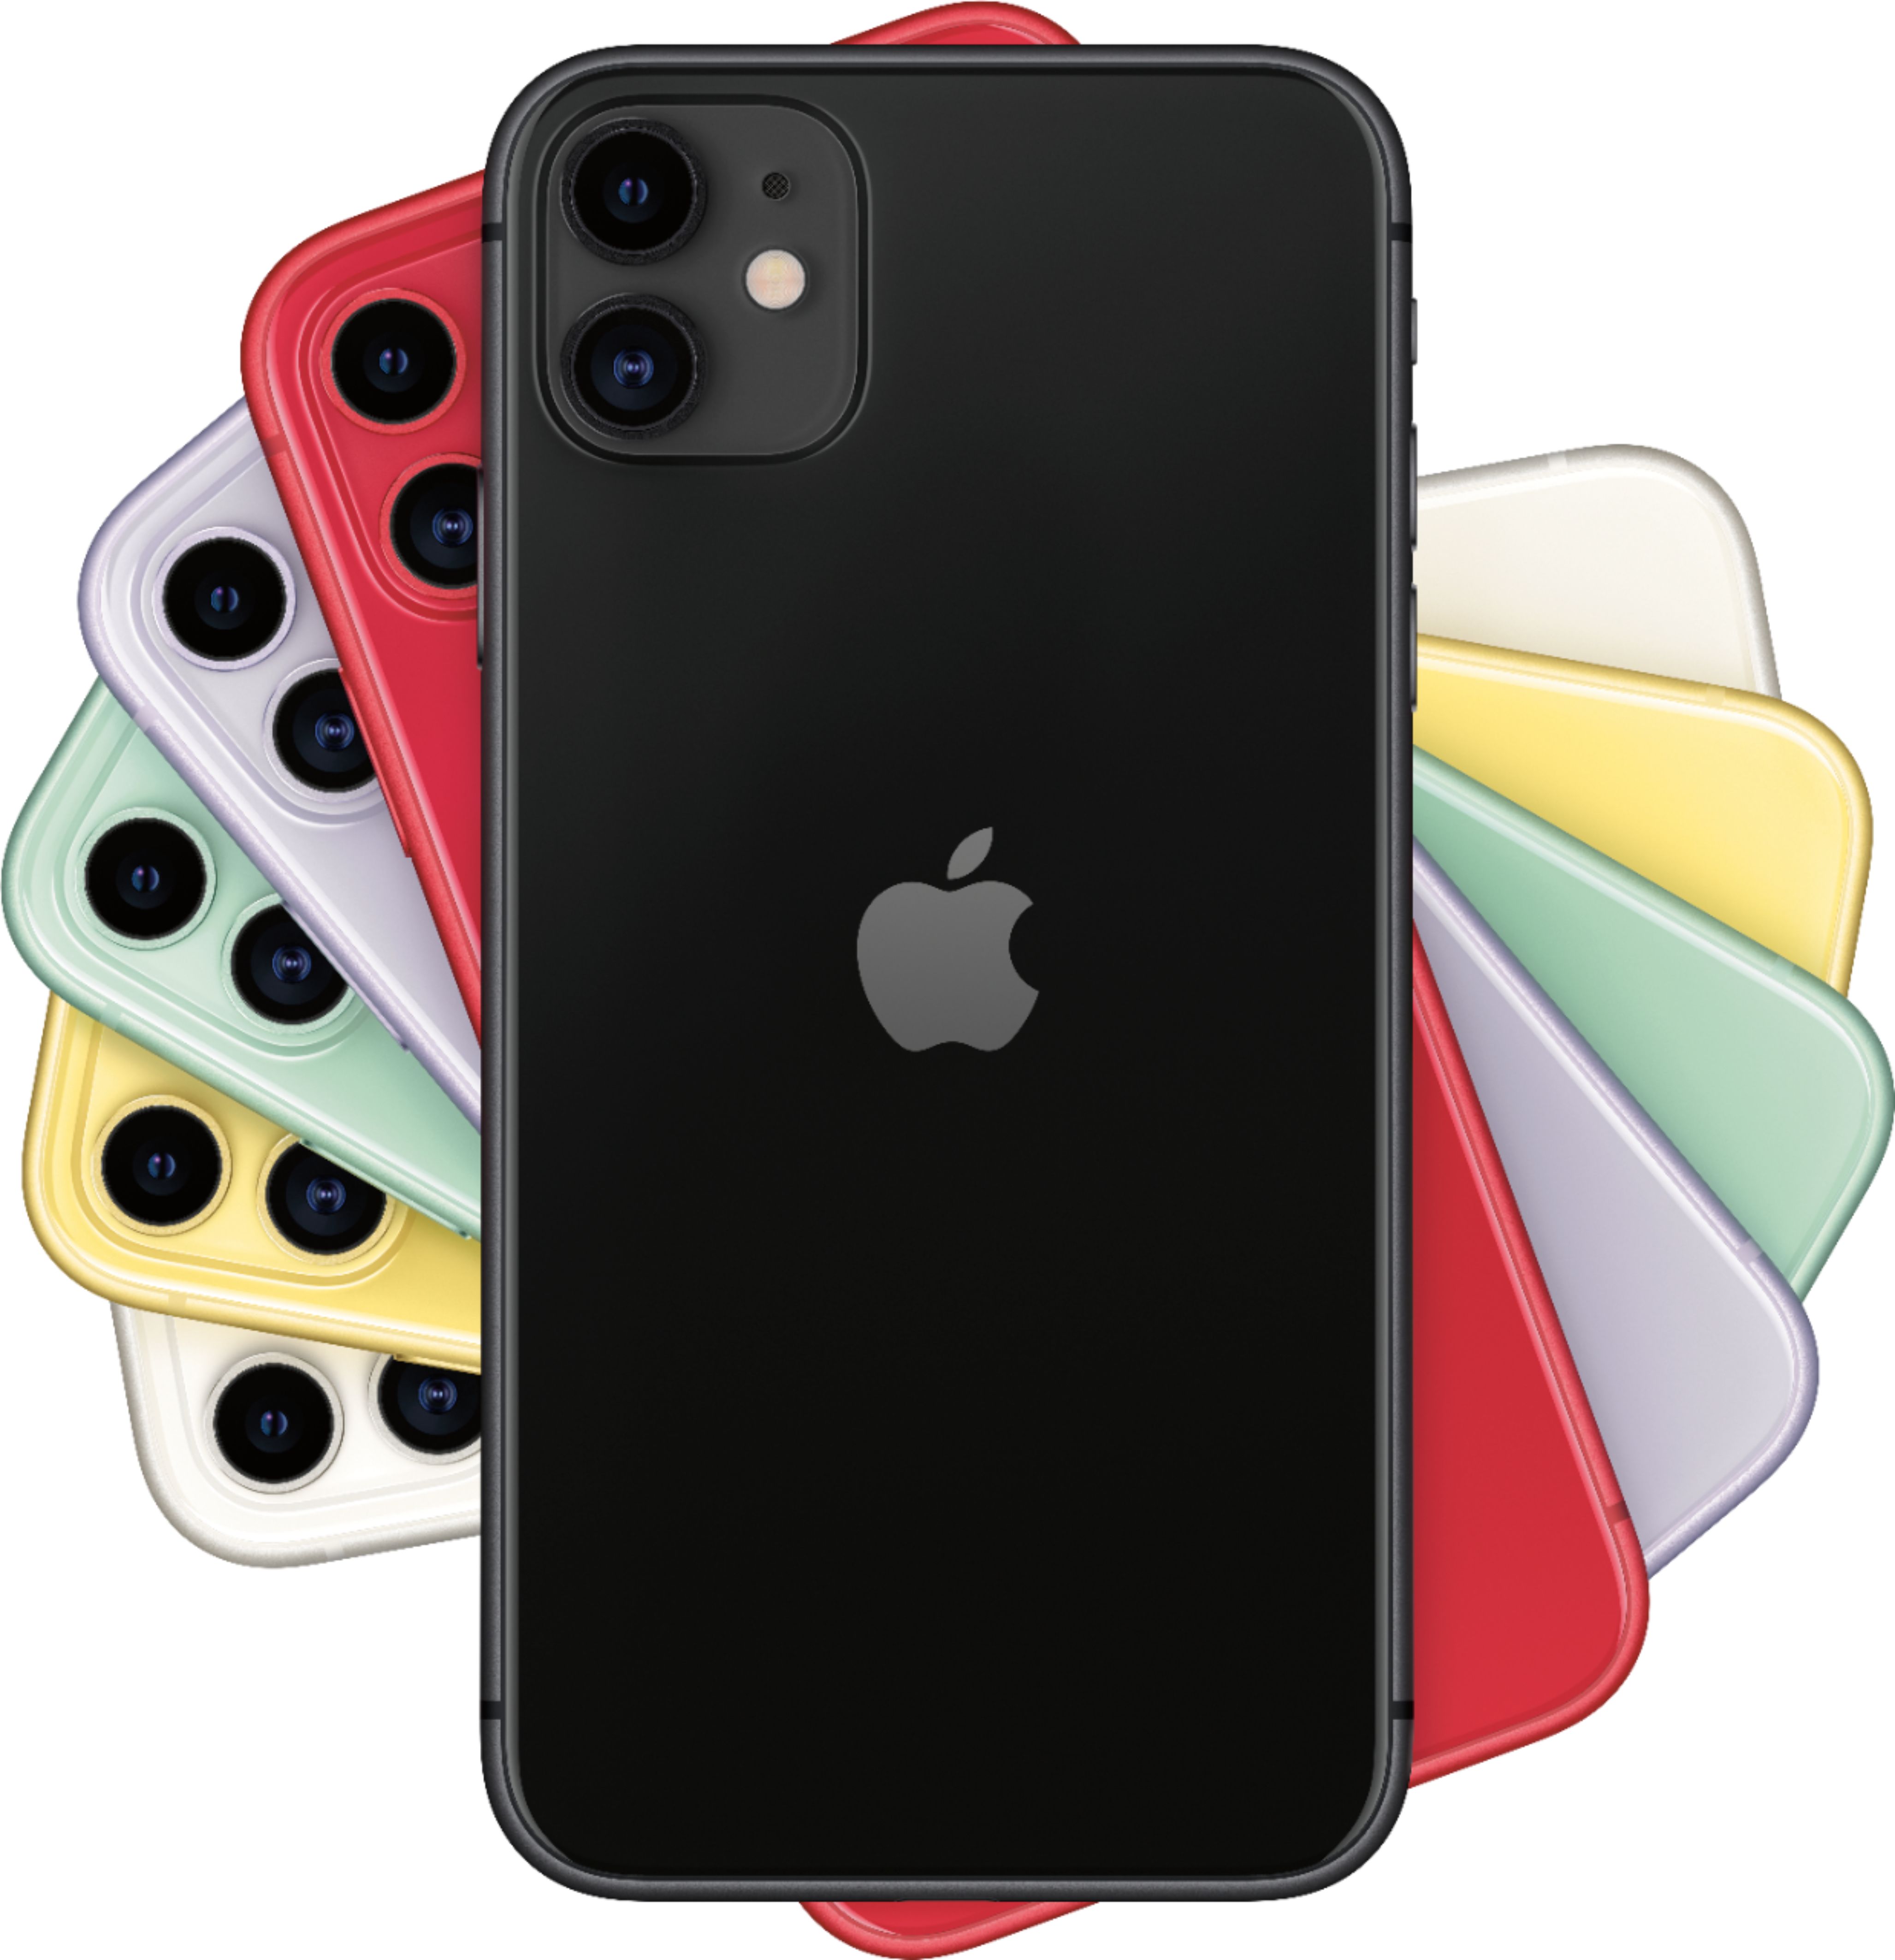 Apple iPhone 11 256GB Black (AT&T) MWLL2LL/A - Best Buy